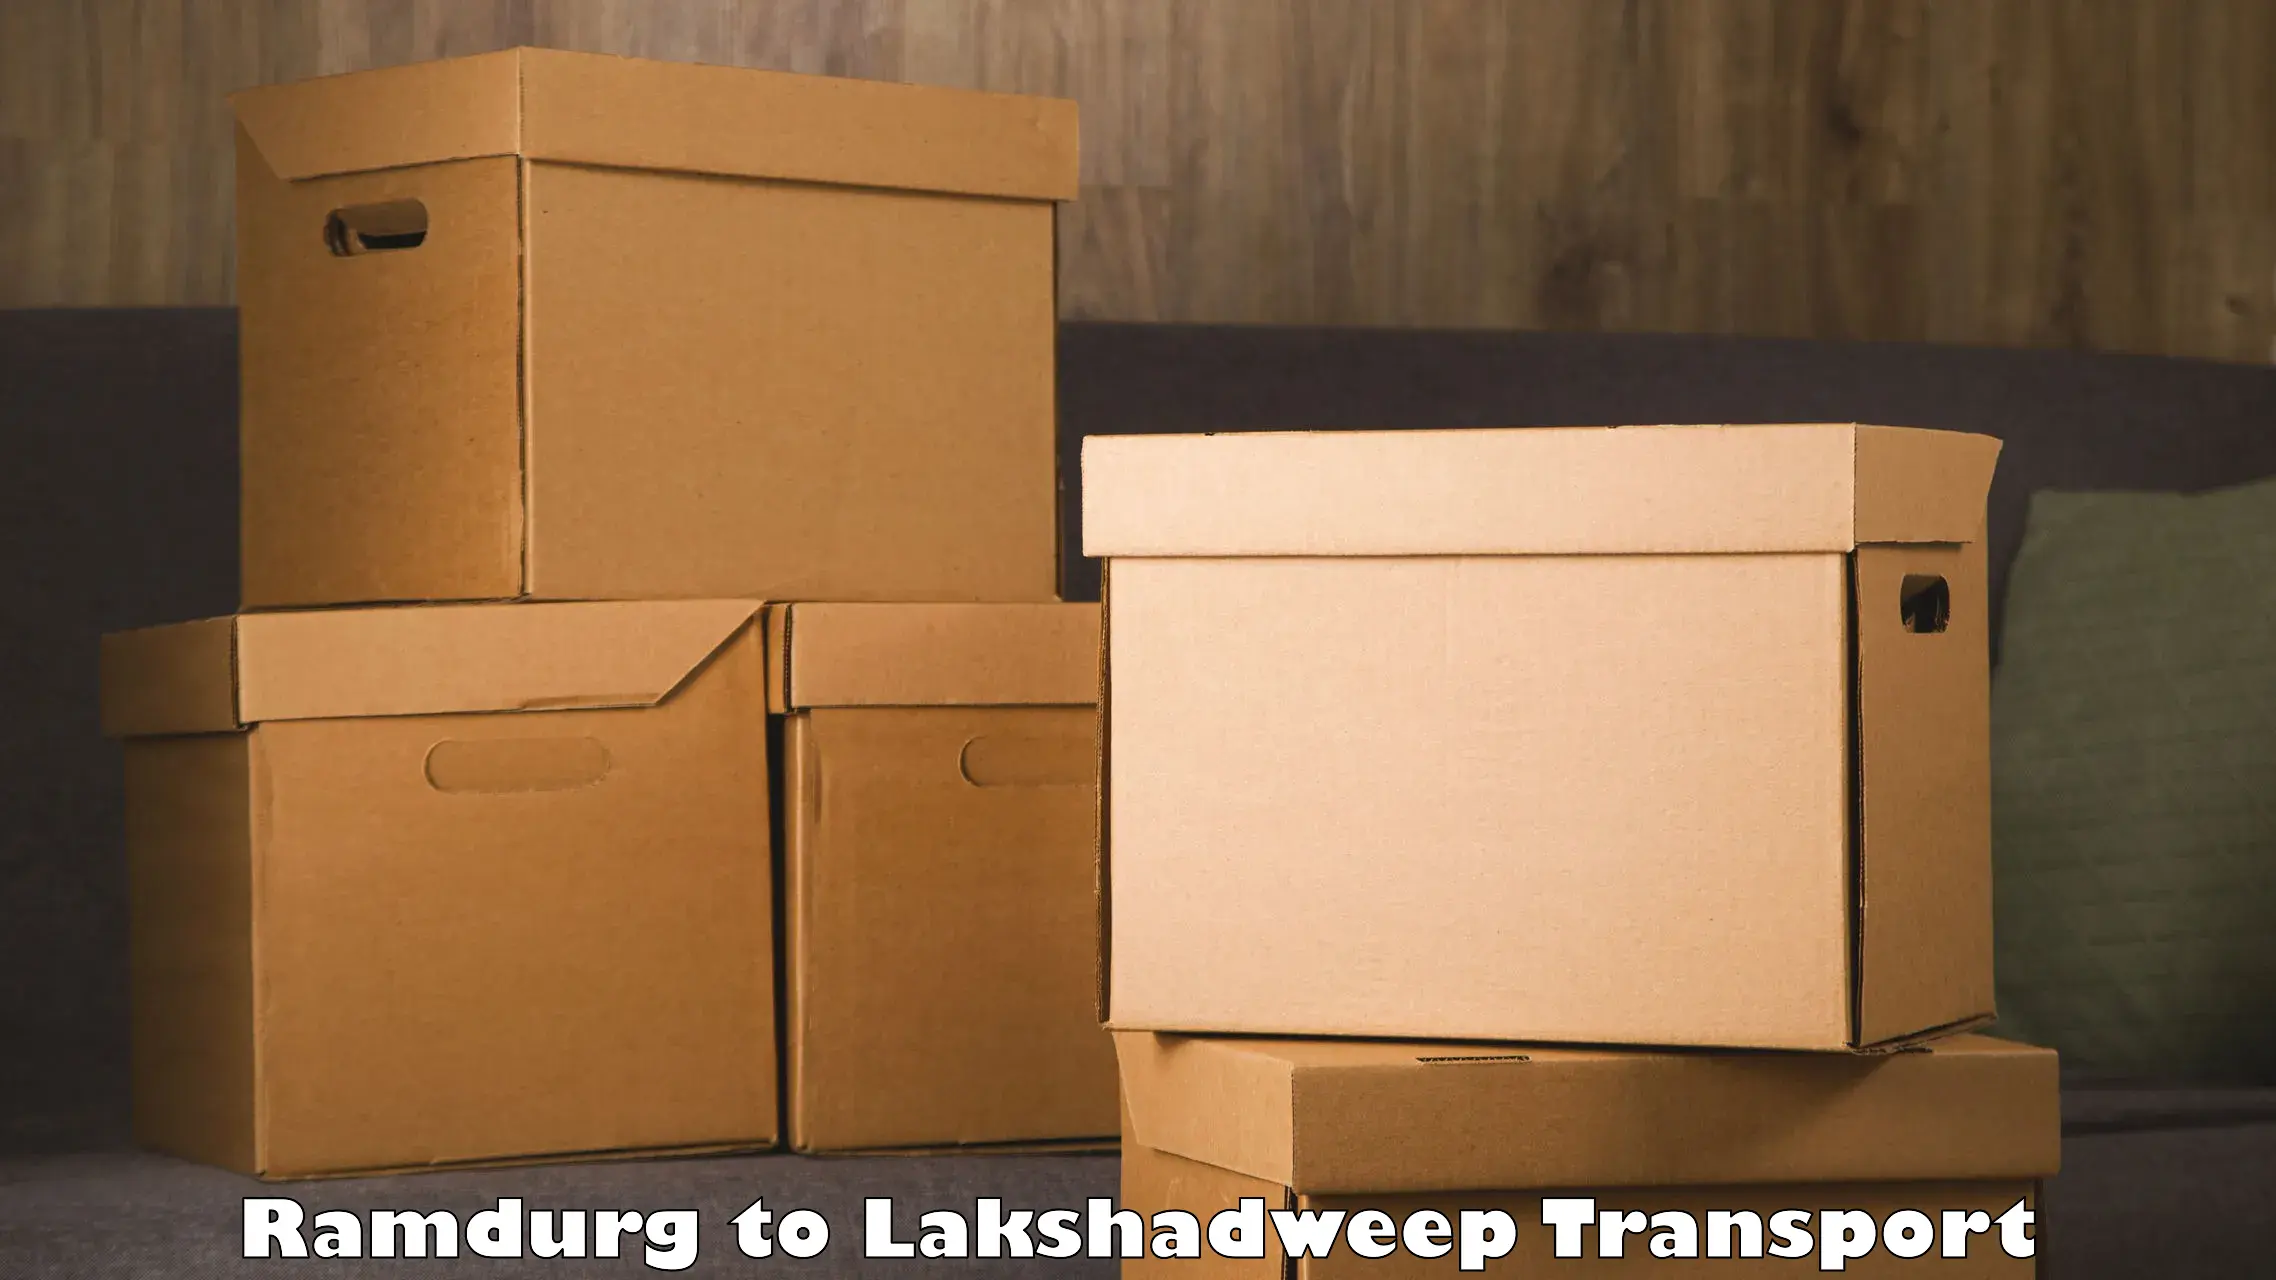 Furniture transport service Ramdurg to Lakshadweep